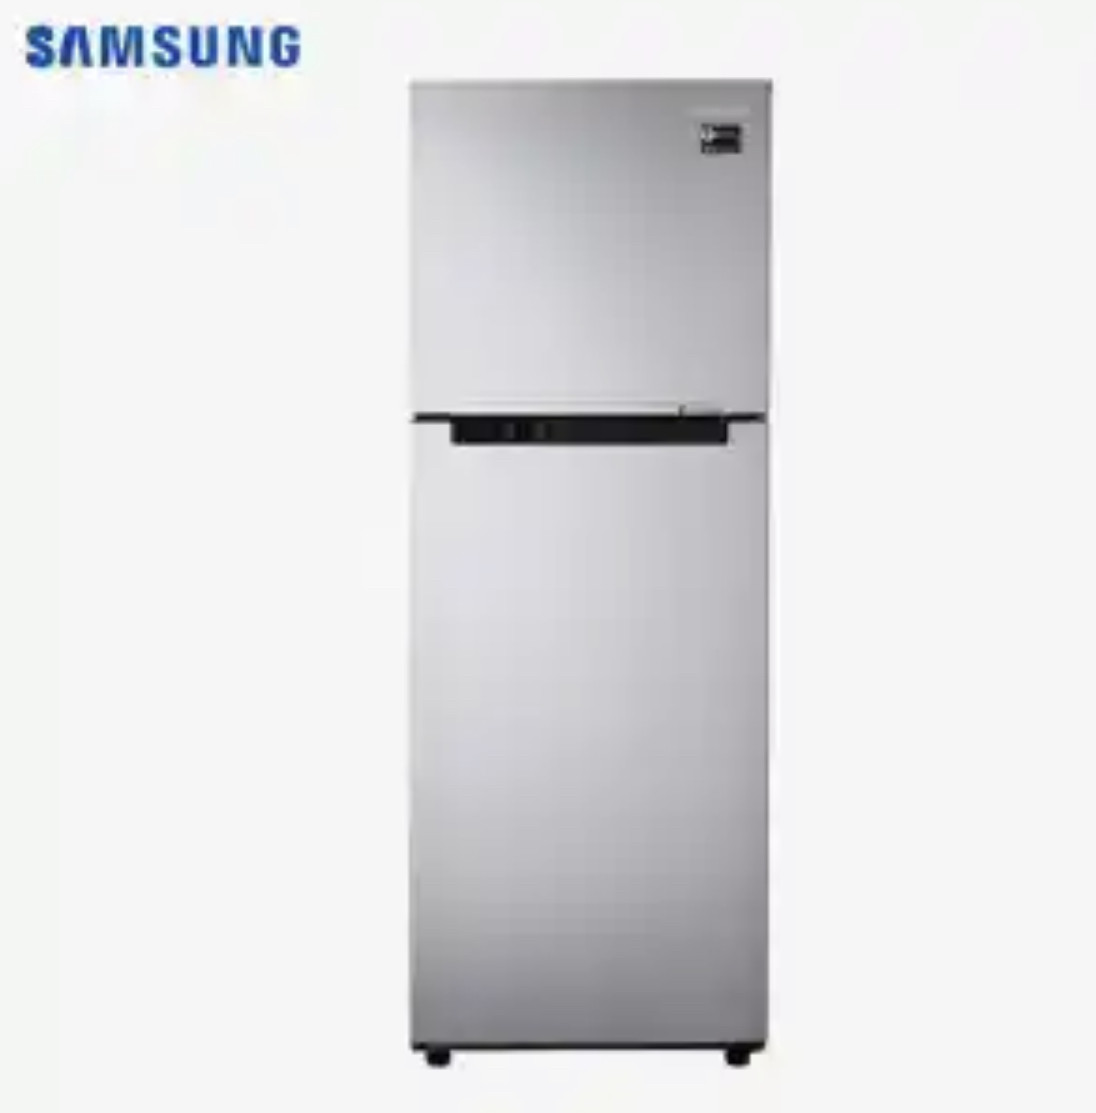 Samsung freez